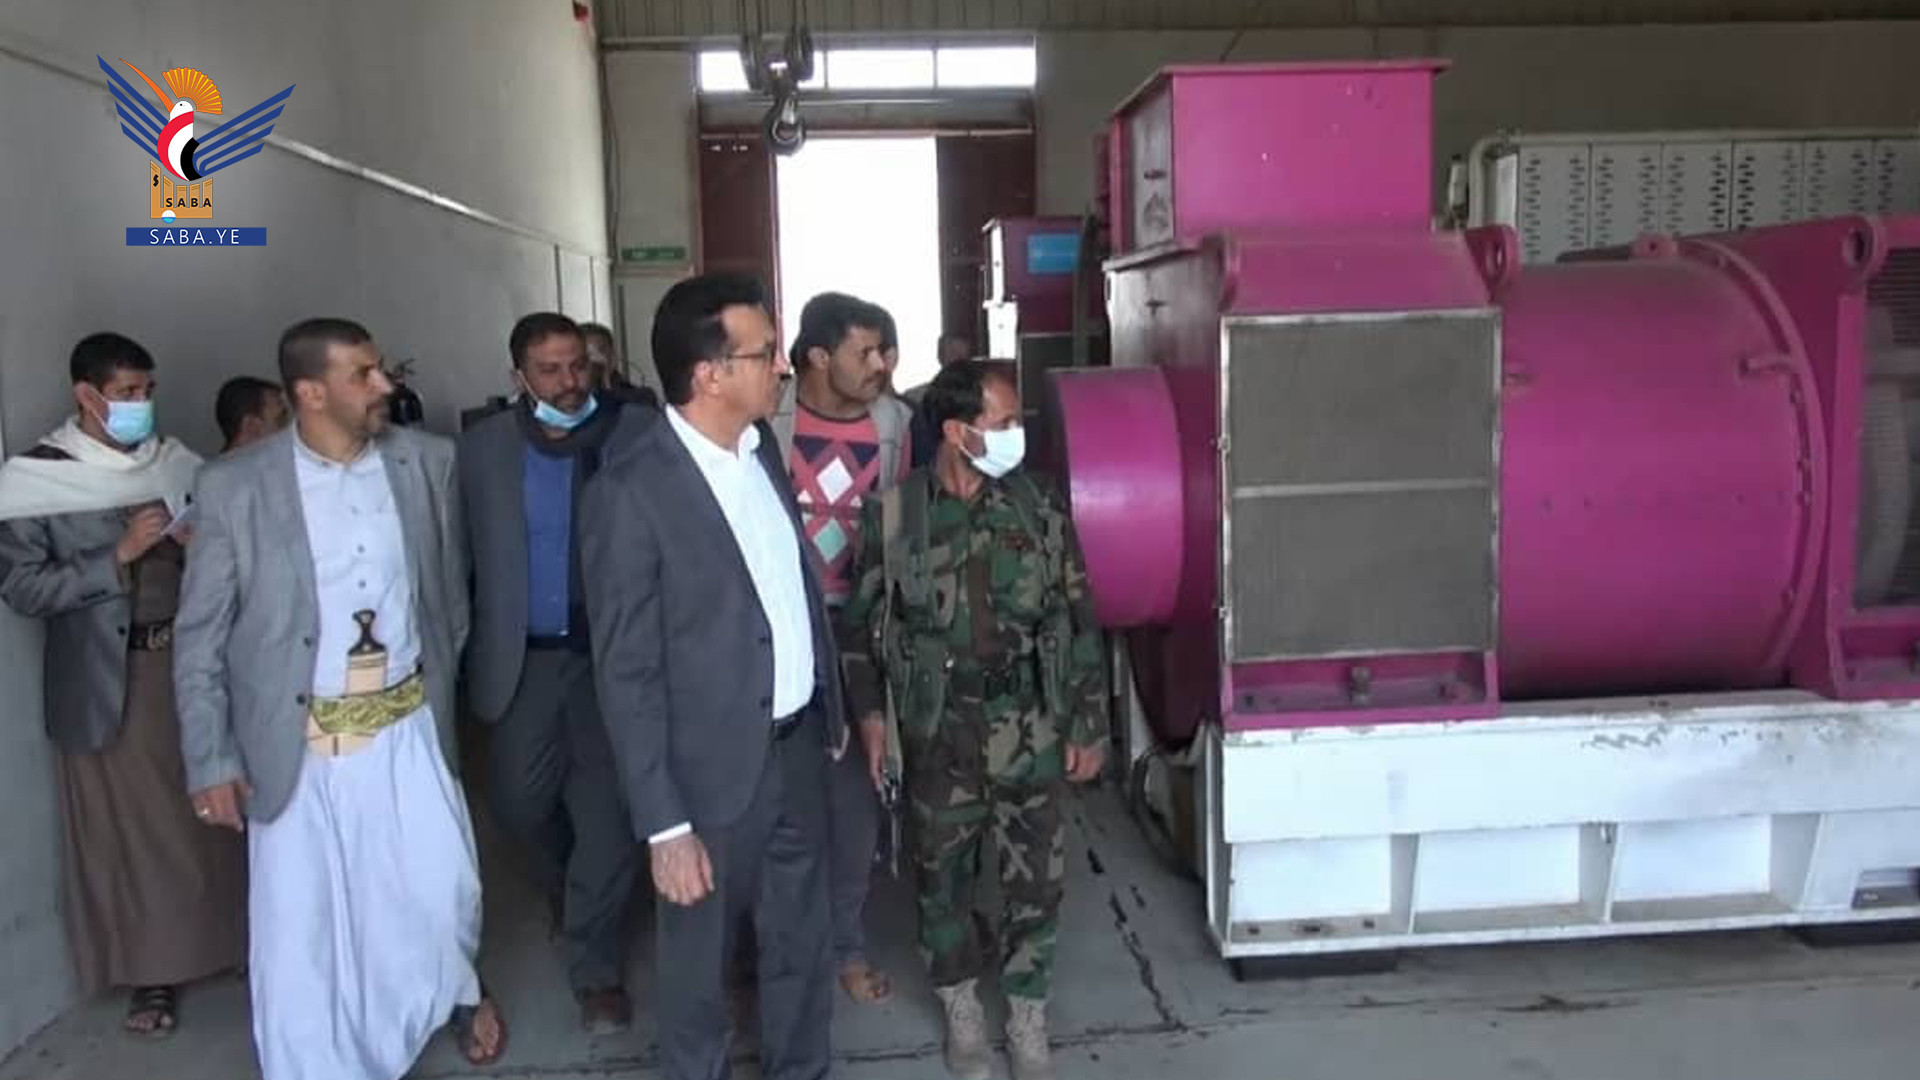 Der Wasserminister bespricht den Arbeitsfortschritt der Kläranlage von Sanaa